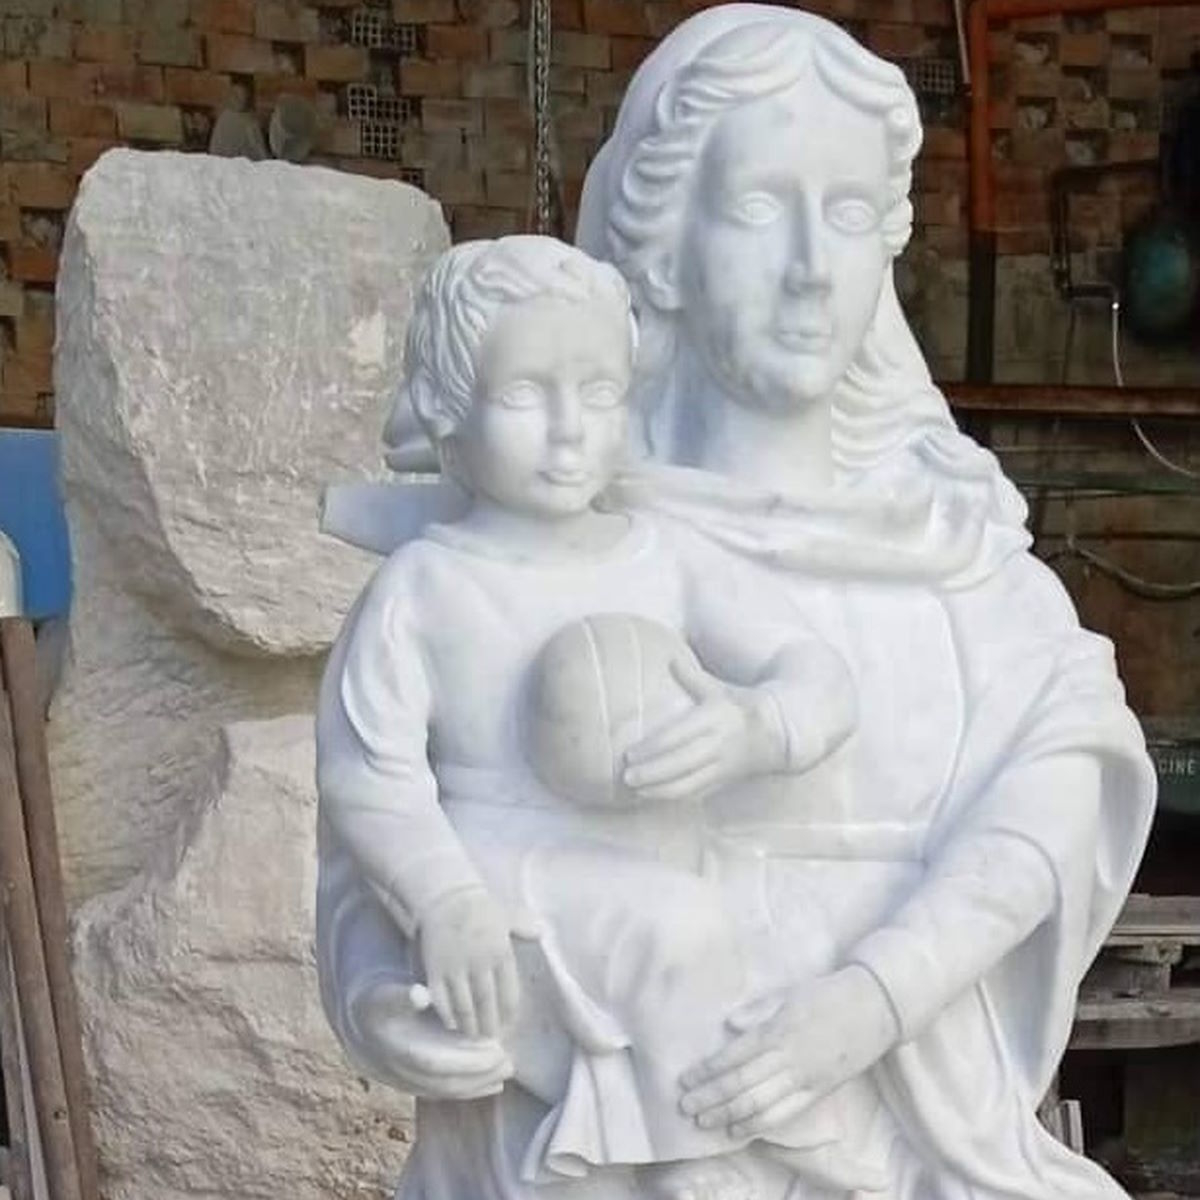 Arte sacra in Calabria: “Madonna delle fonti”, scultura di Tonino Gaudioso